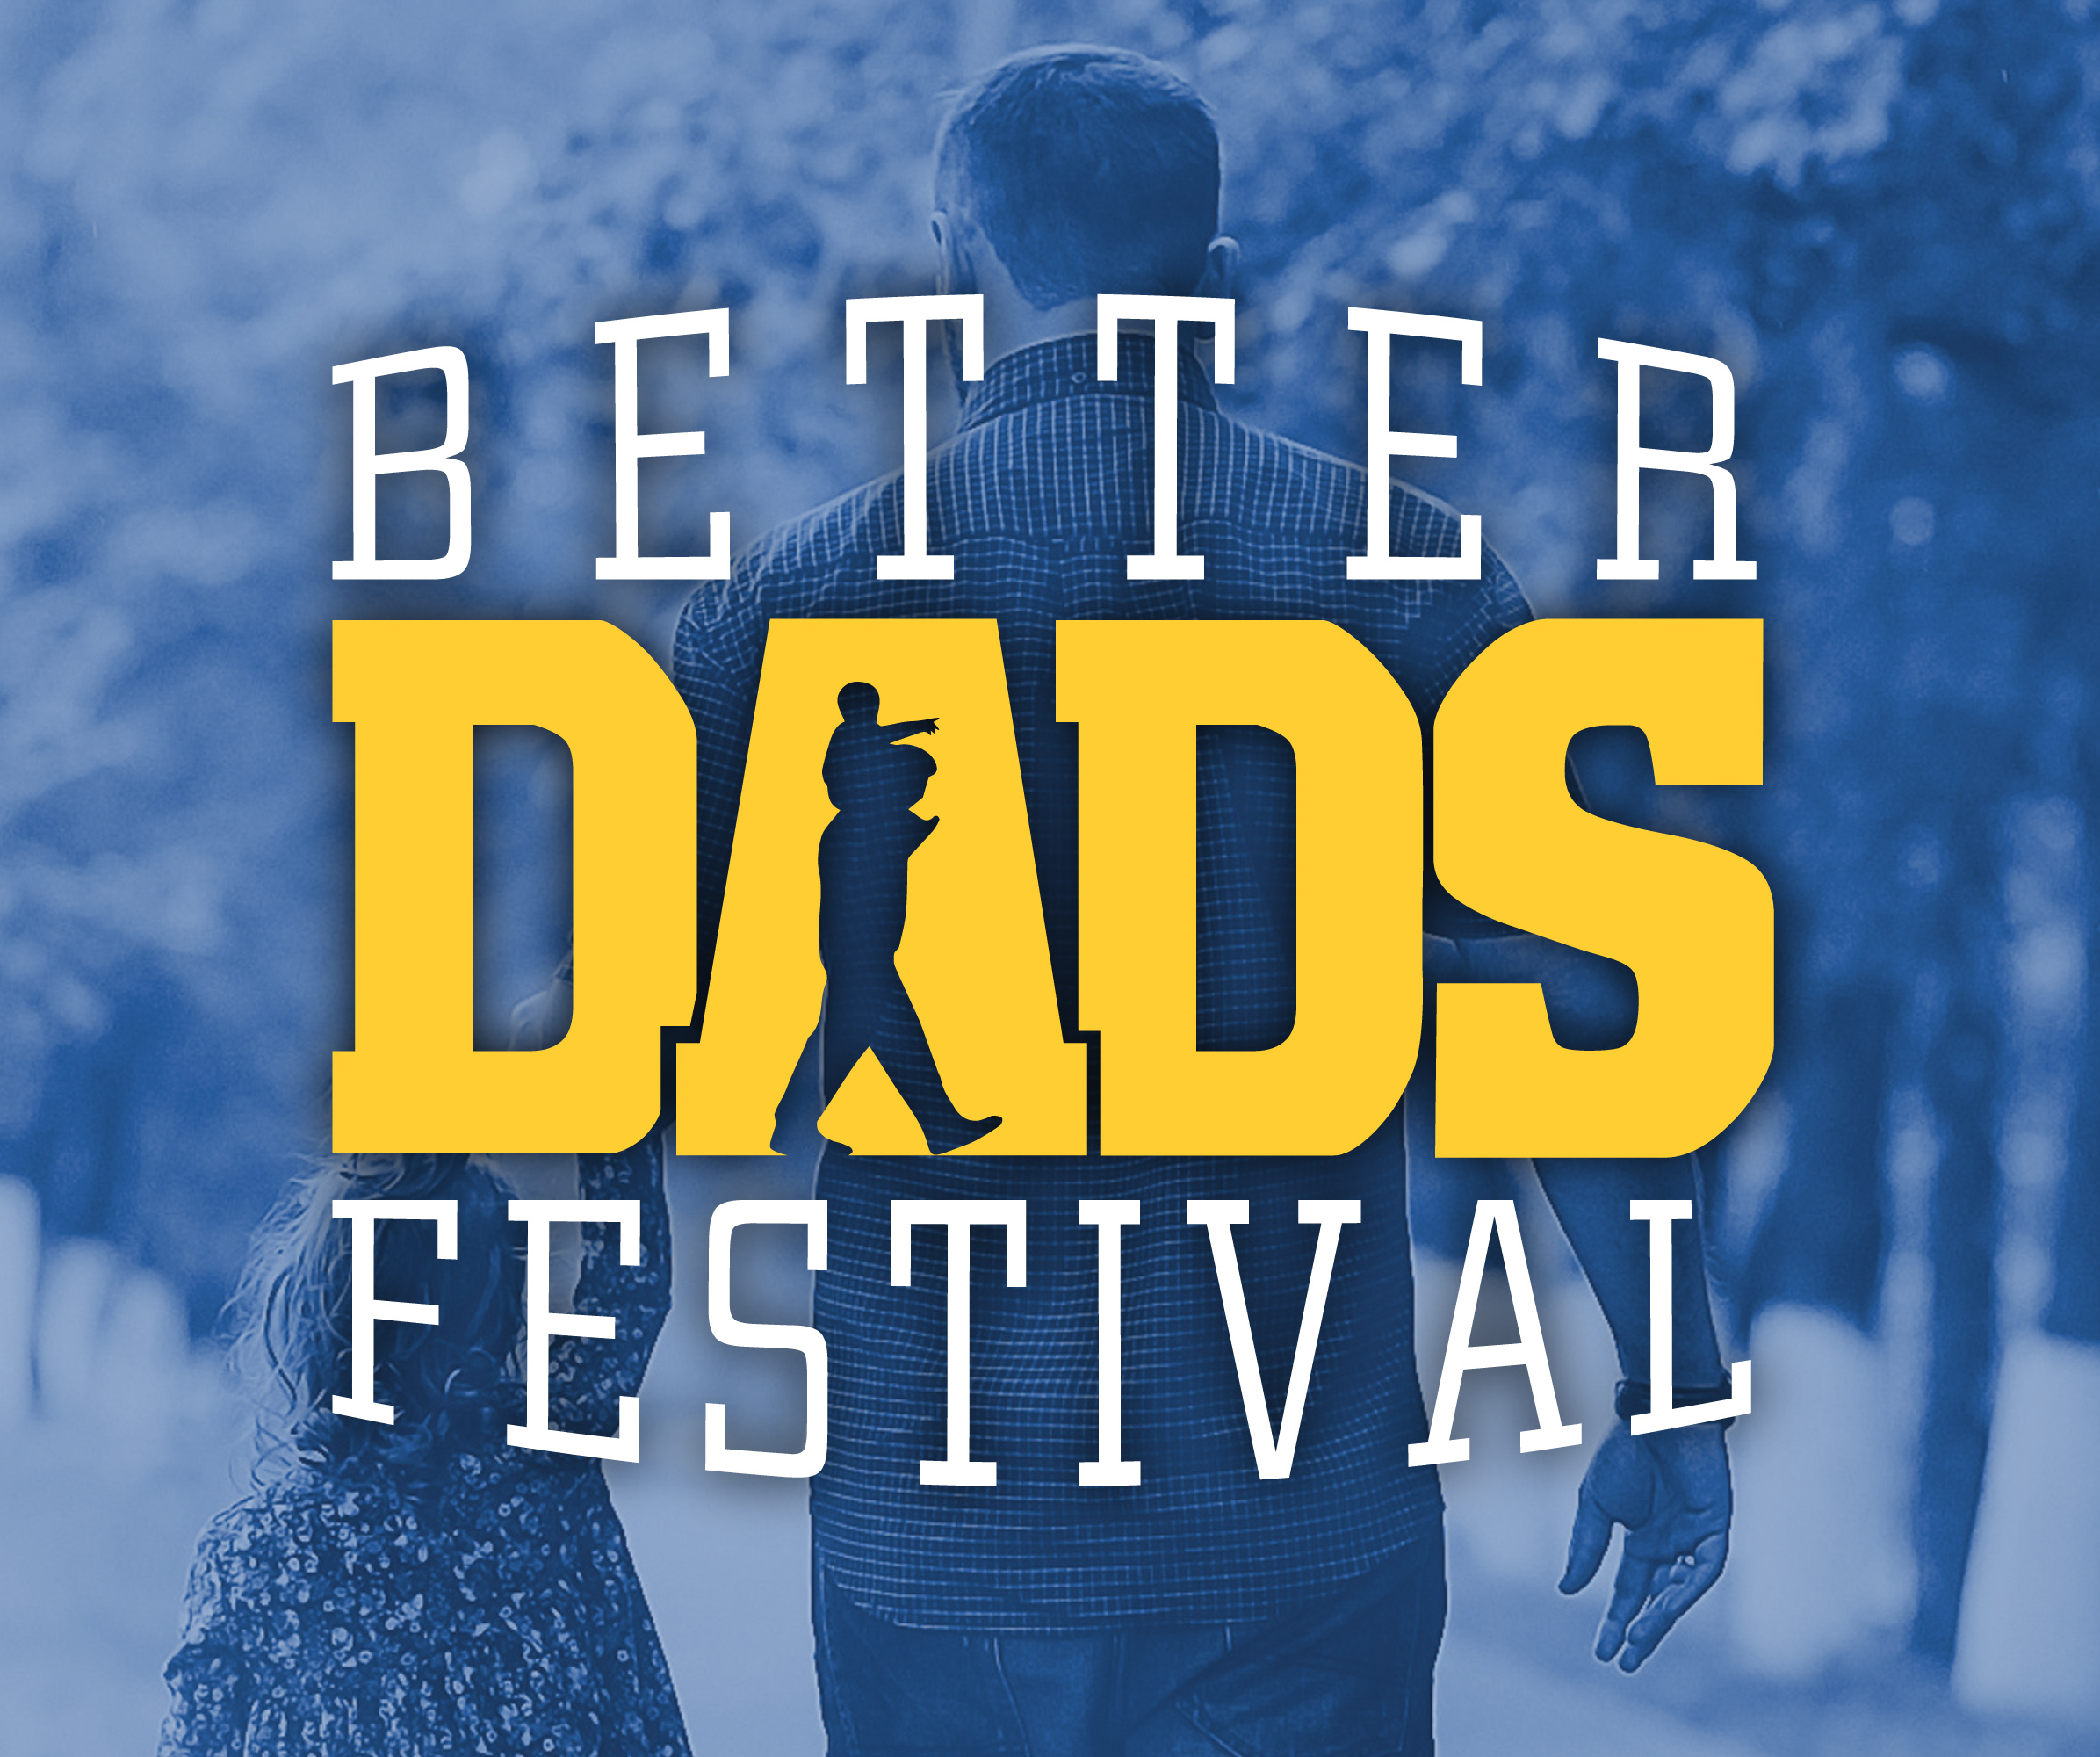 Better Dads Festival